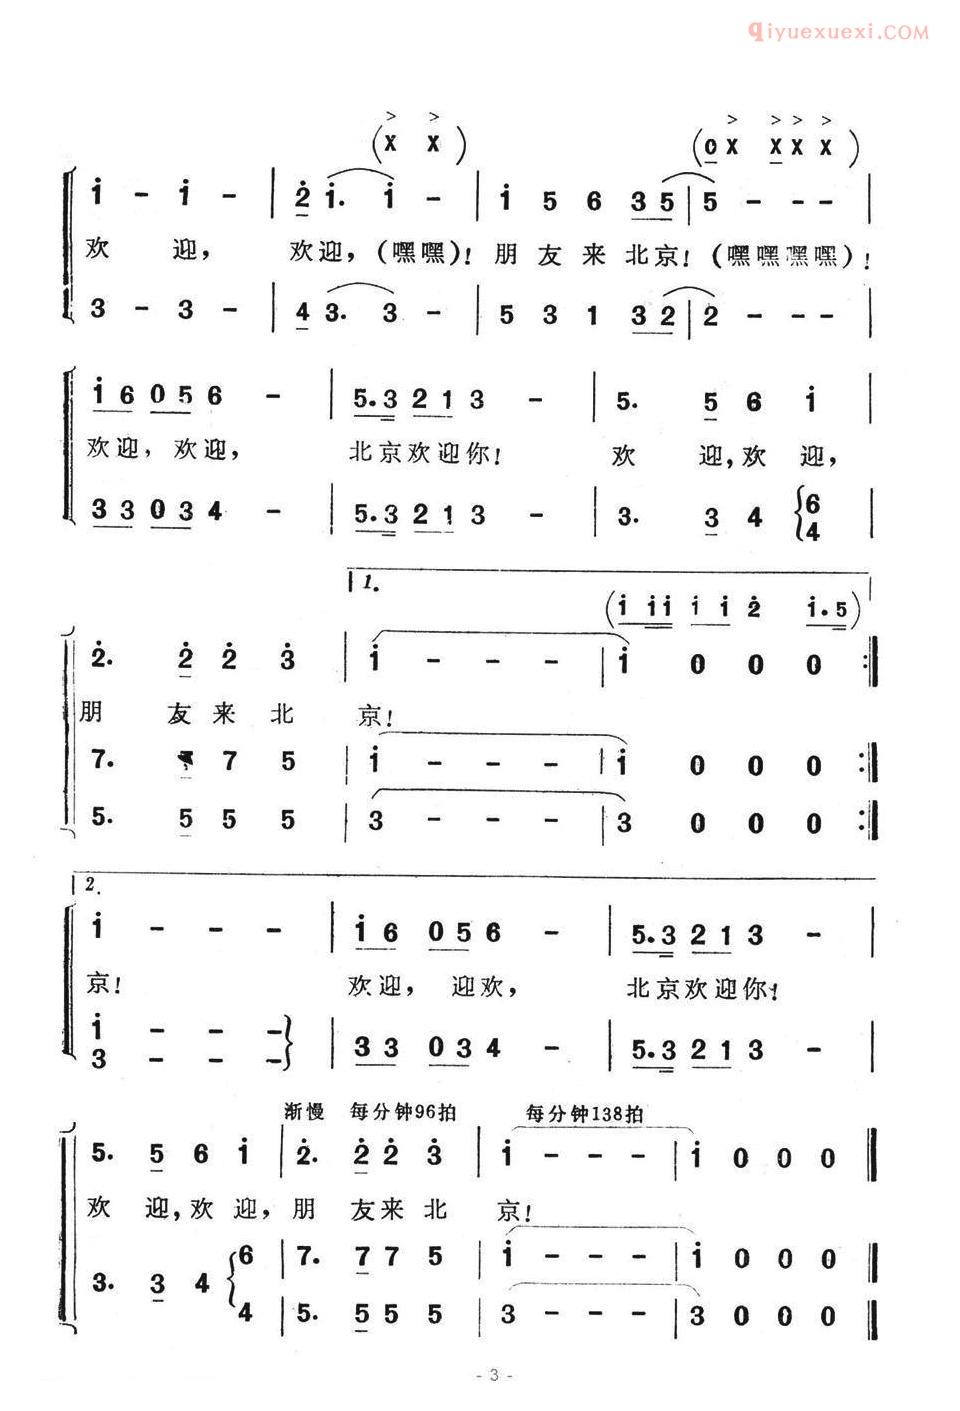 儿童歌曲简谱[北京欢迎你]王晓岭词 王和声曲、合唱